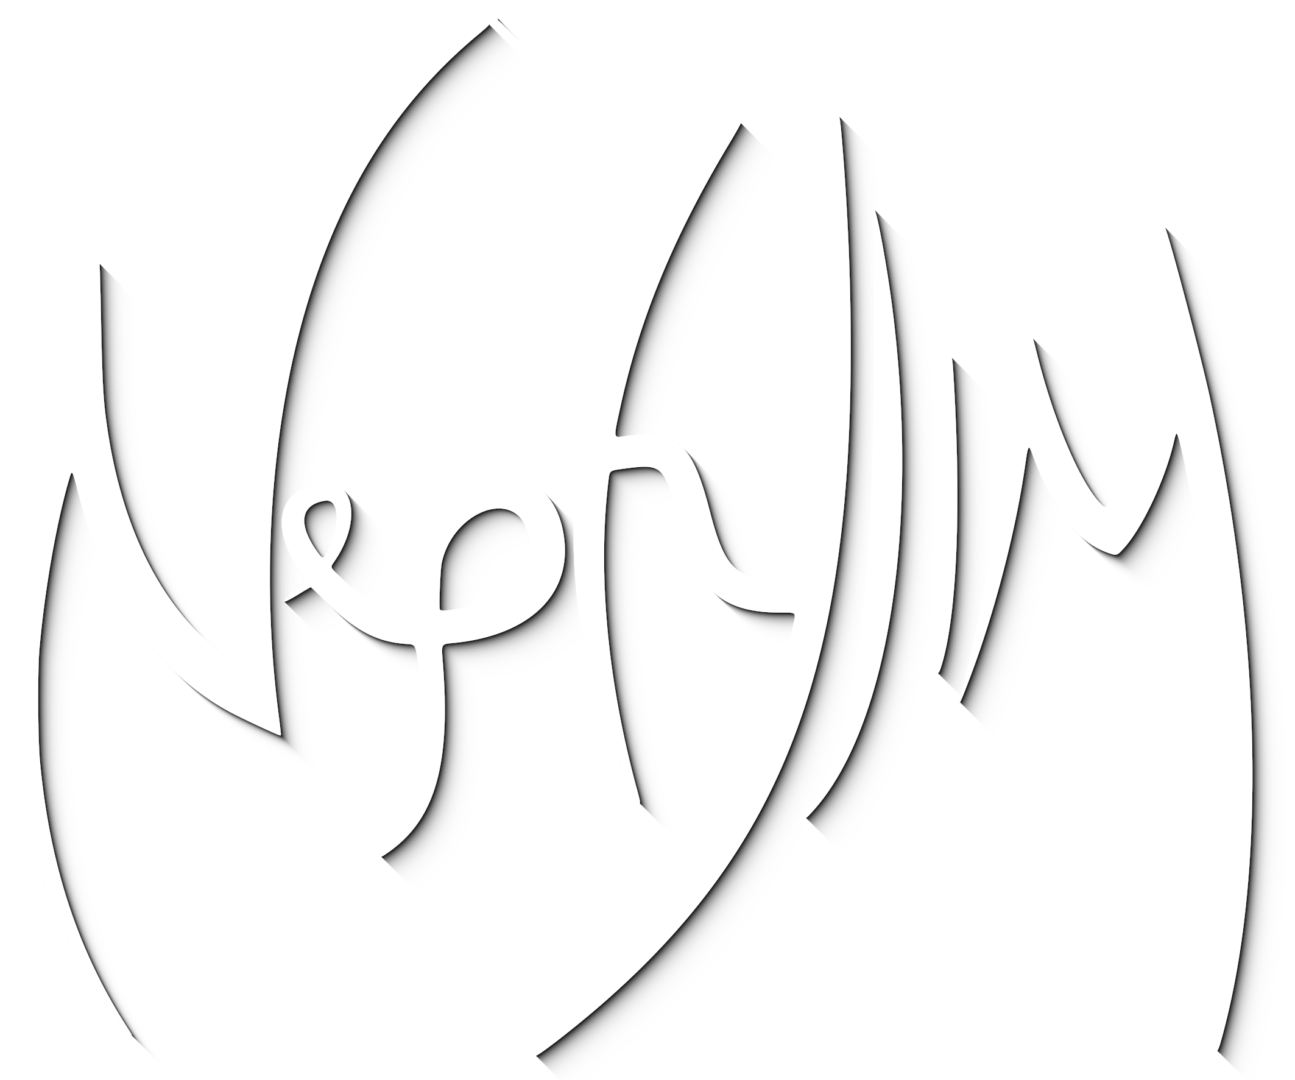 Nephylim - Dutch Melodic Death